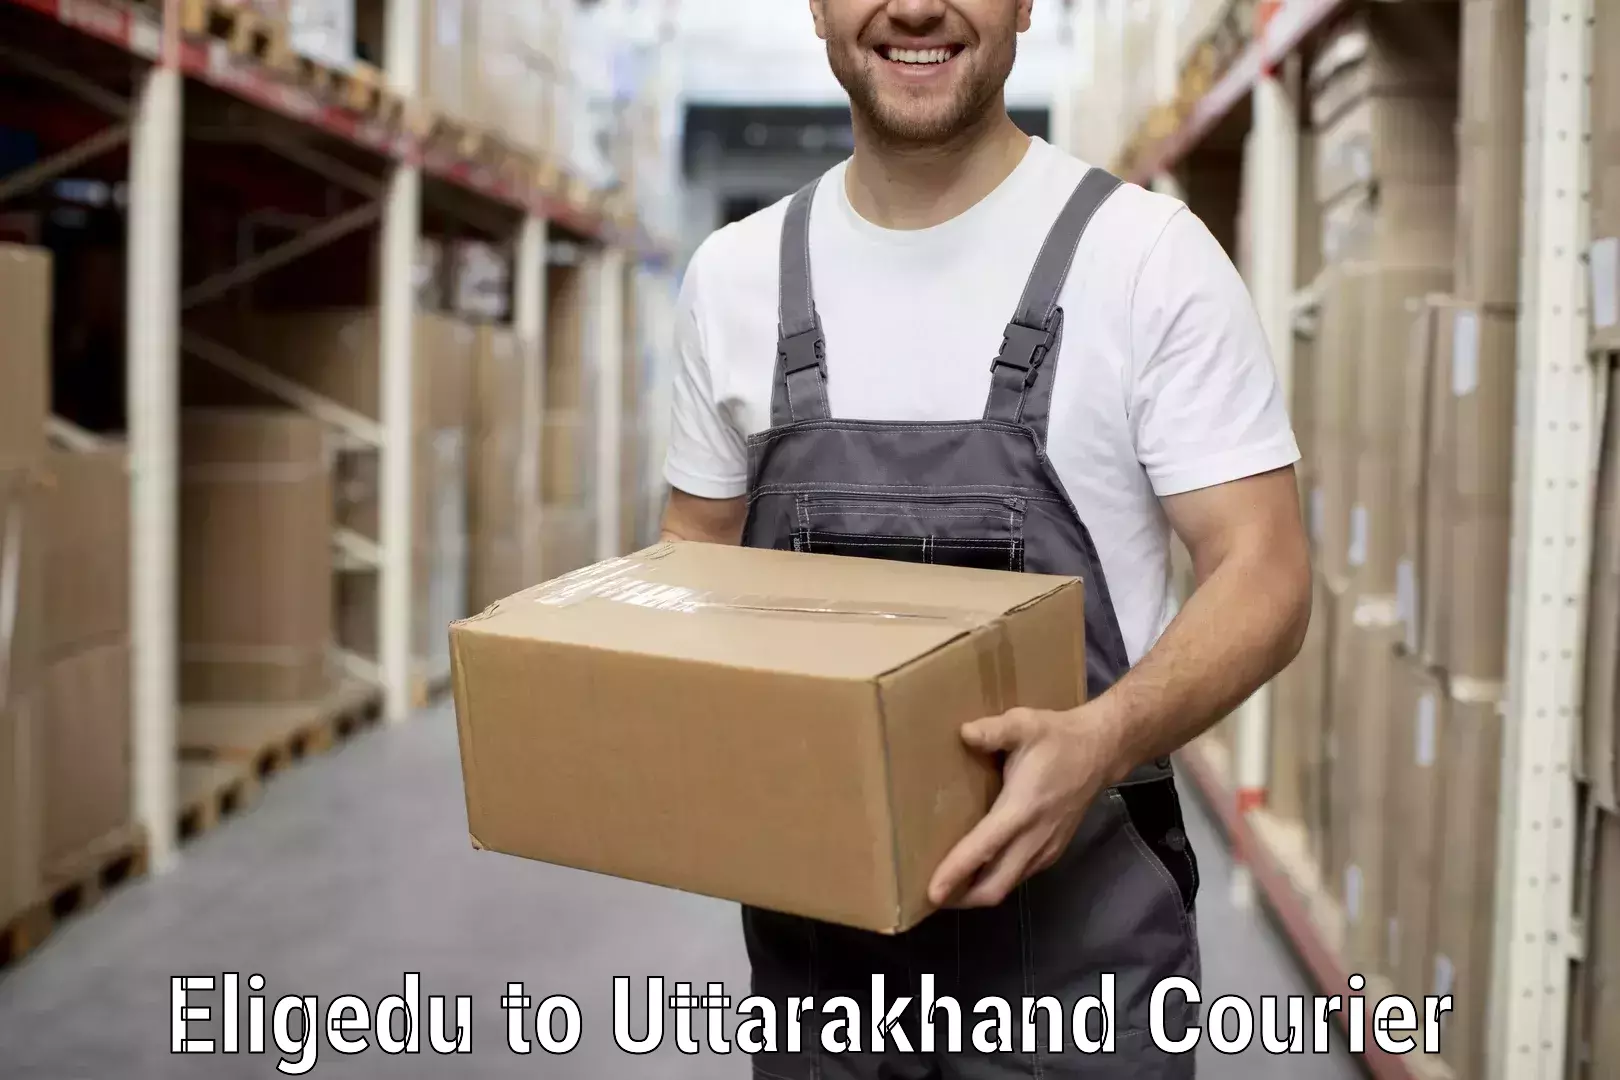 Professional moving assistance Eligedu to Uttarkashi